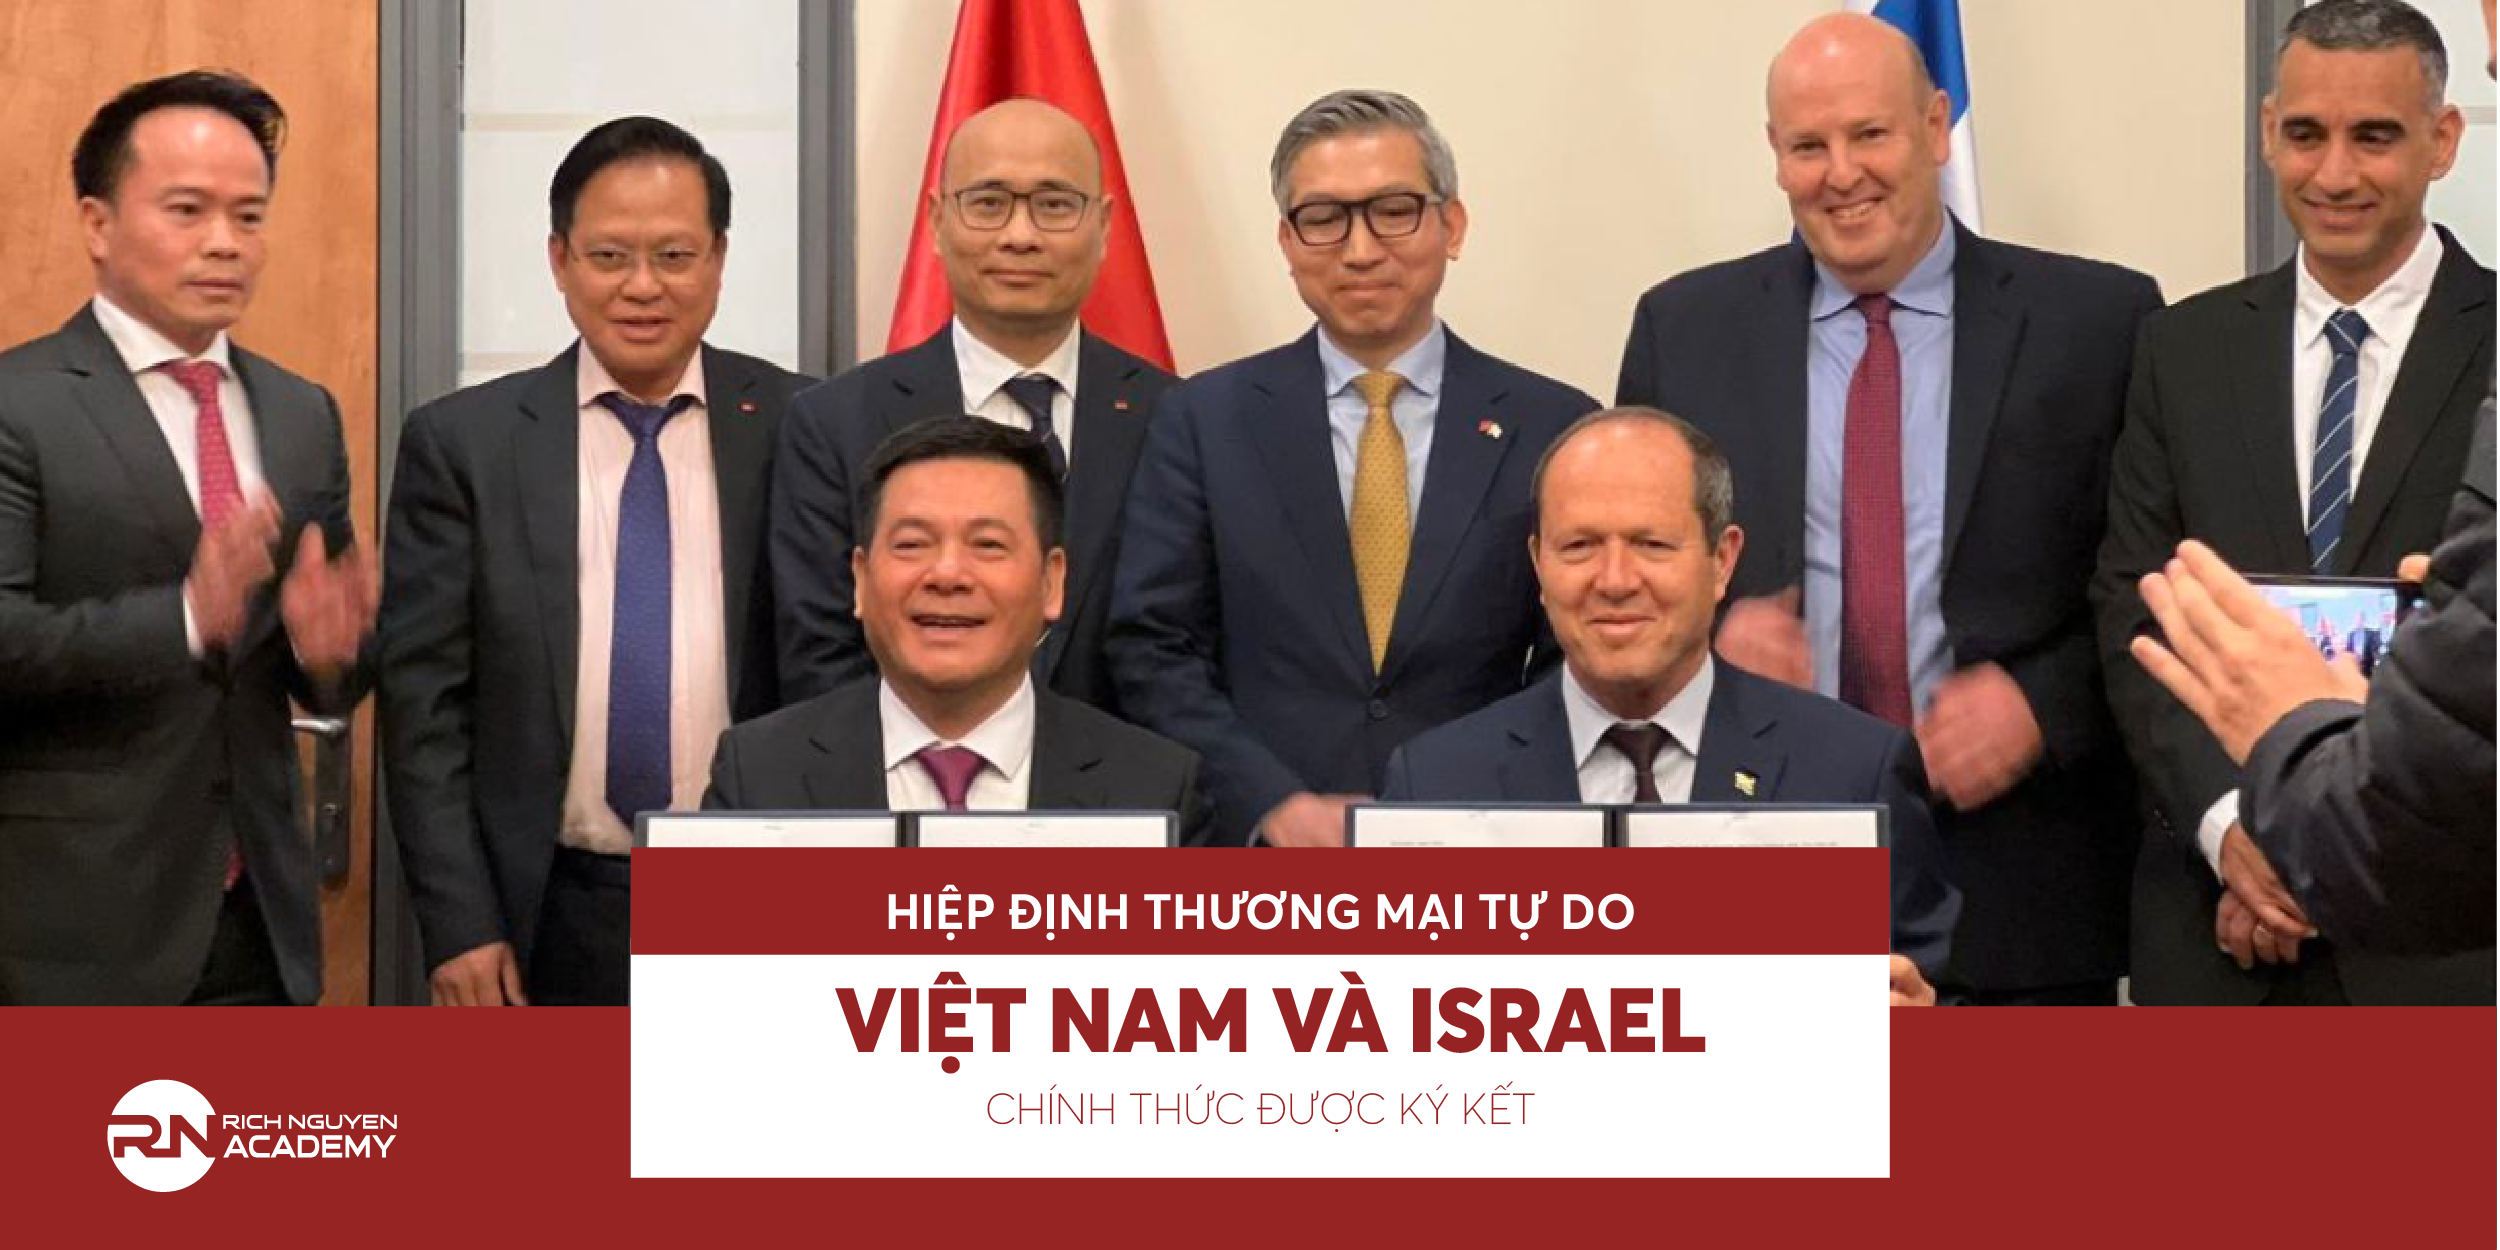 Hiệp định Thương mại tự do Việt Nam và Israel chính thức được ký kết